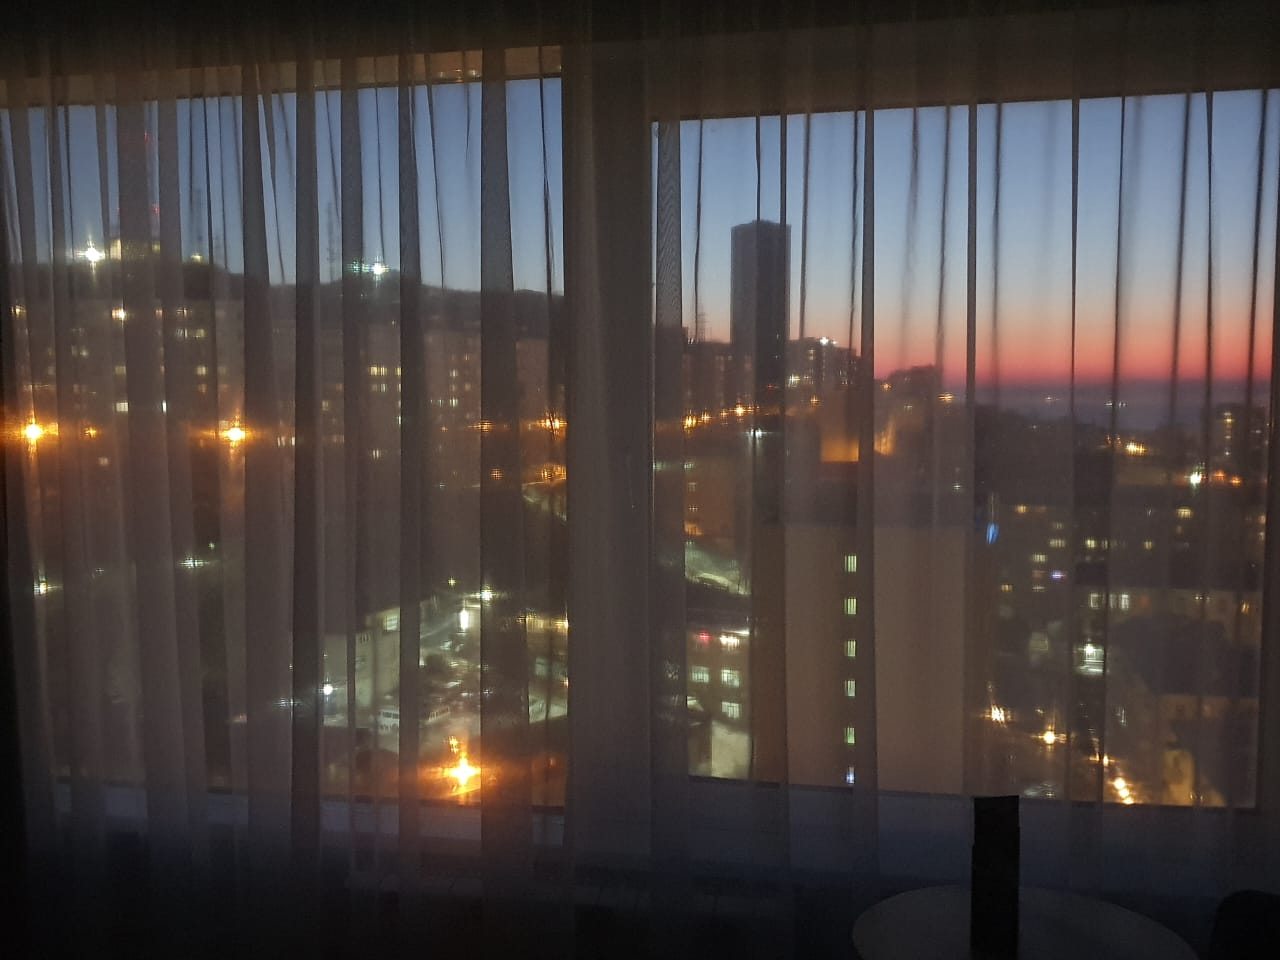 Витражные окна с панорамным видом на город и море, Отель NewLiving Hotel